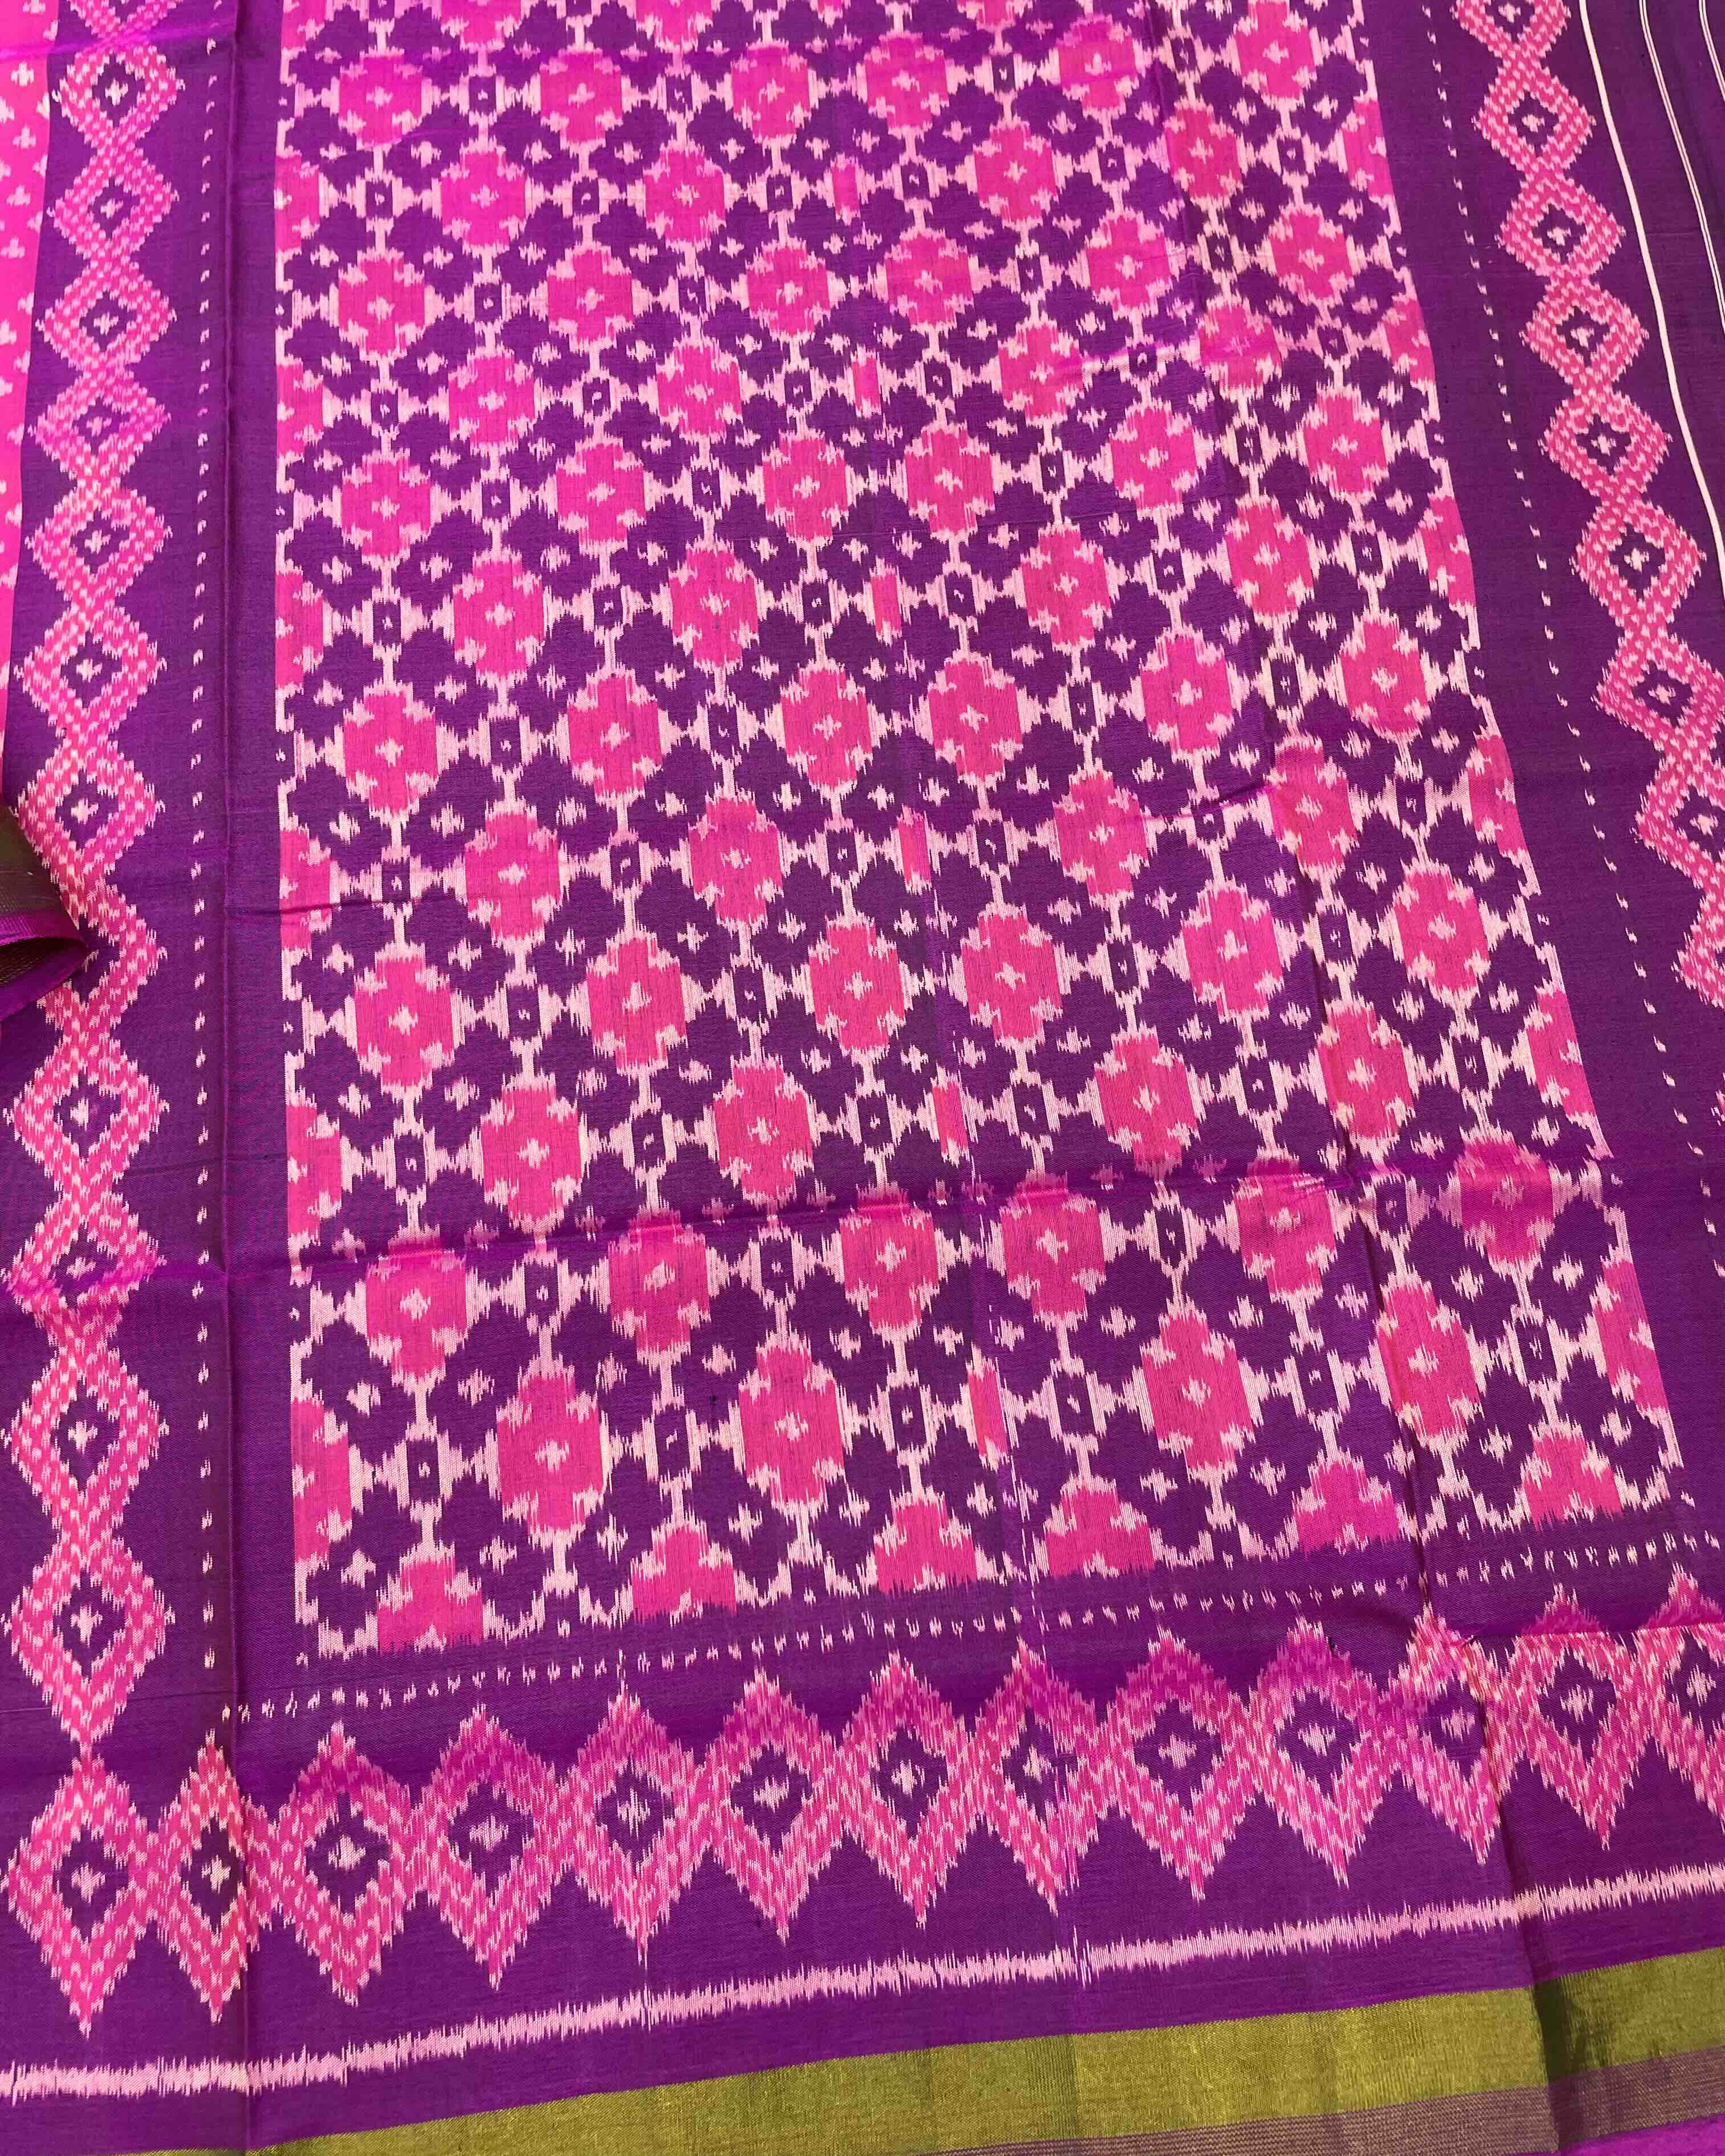 Purple & Pink Bandhani Design Patola Saree